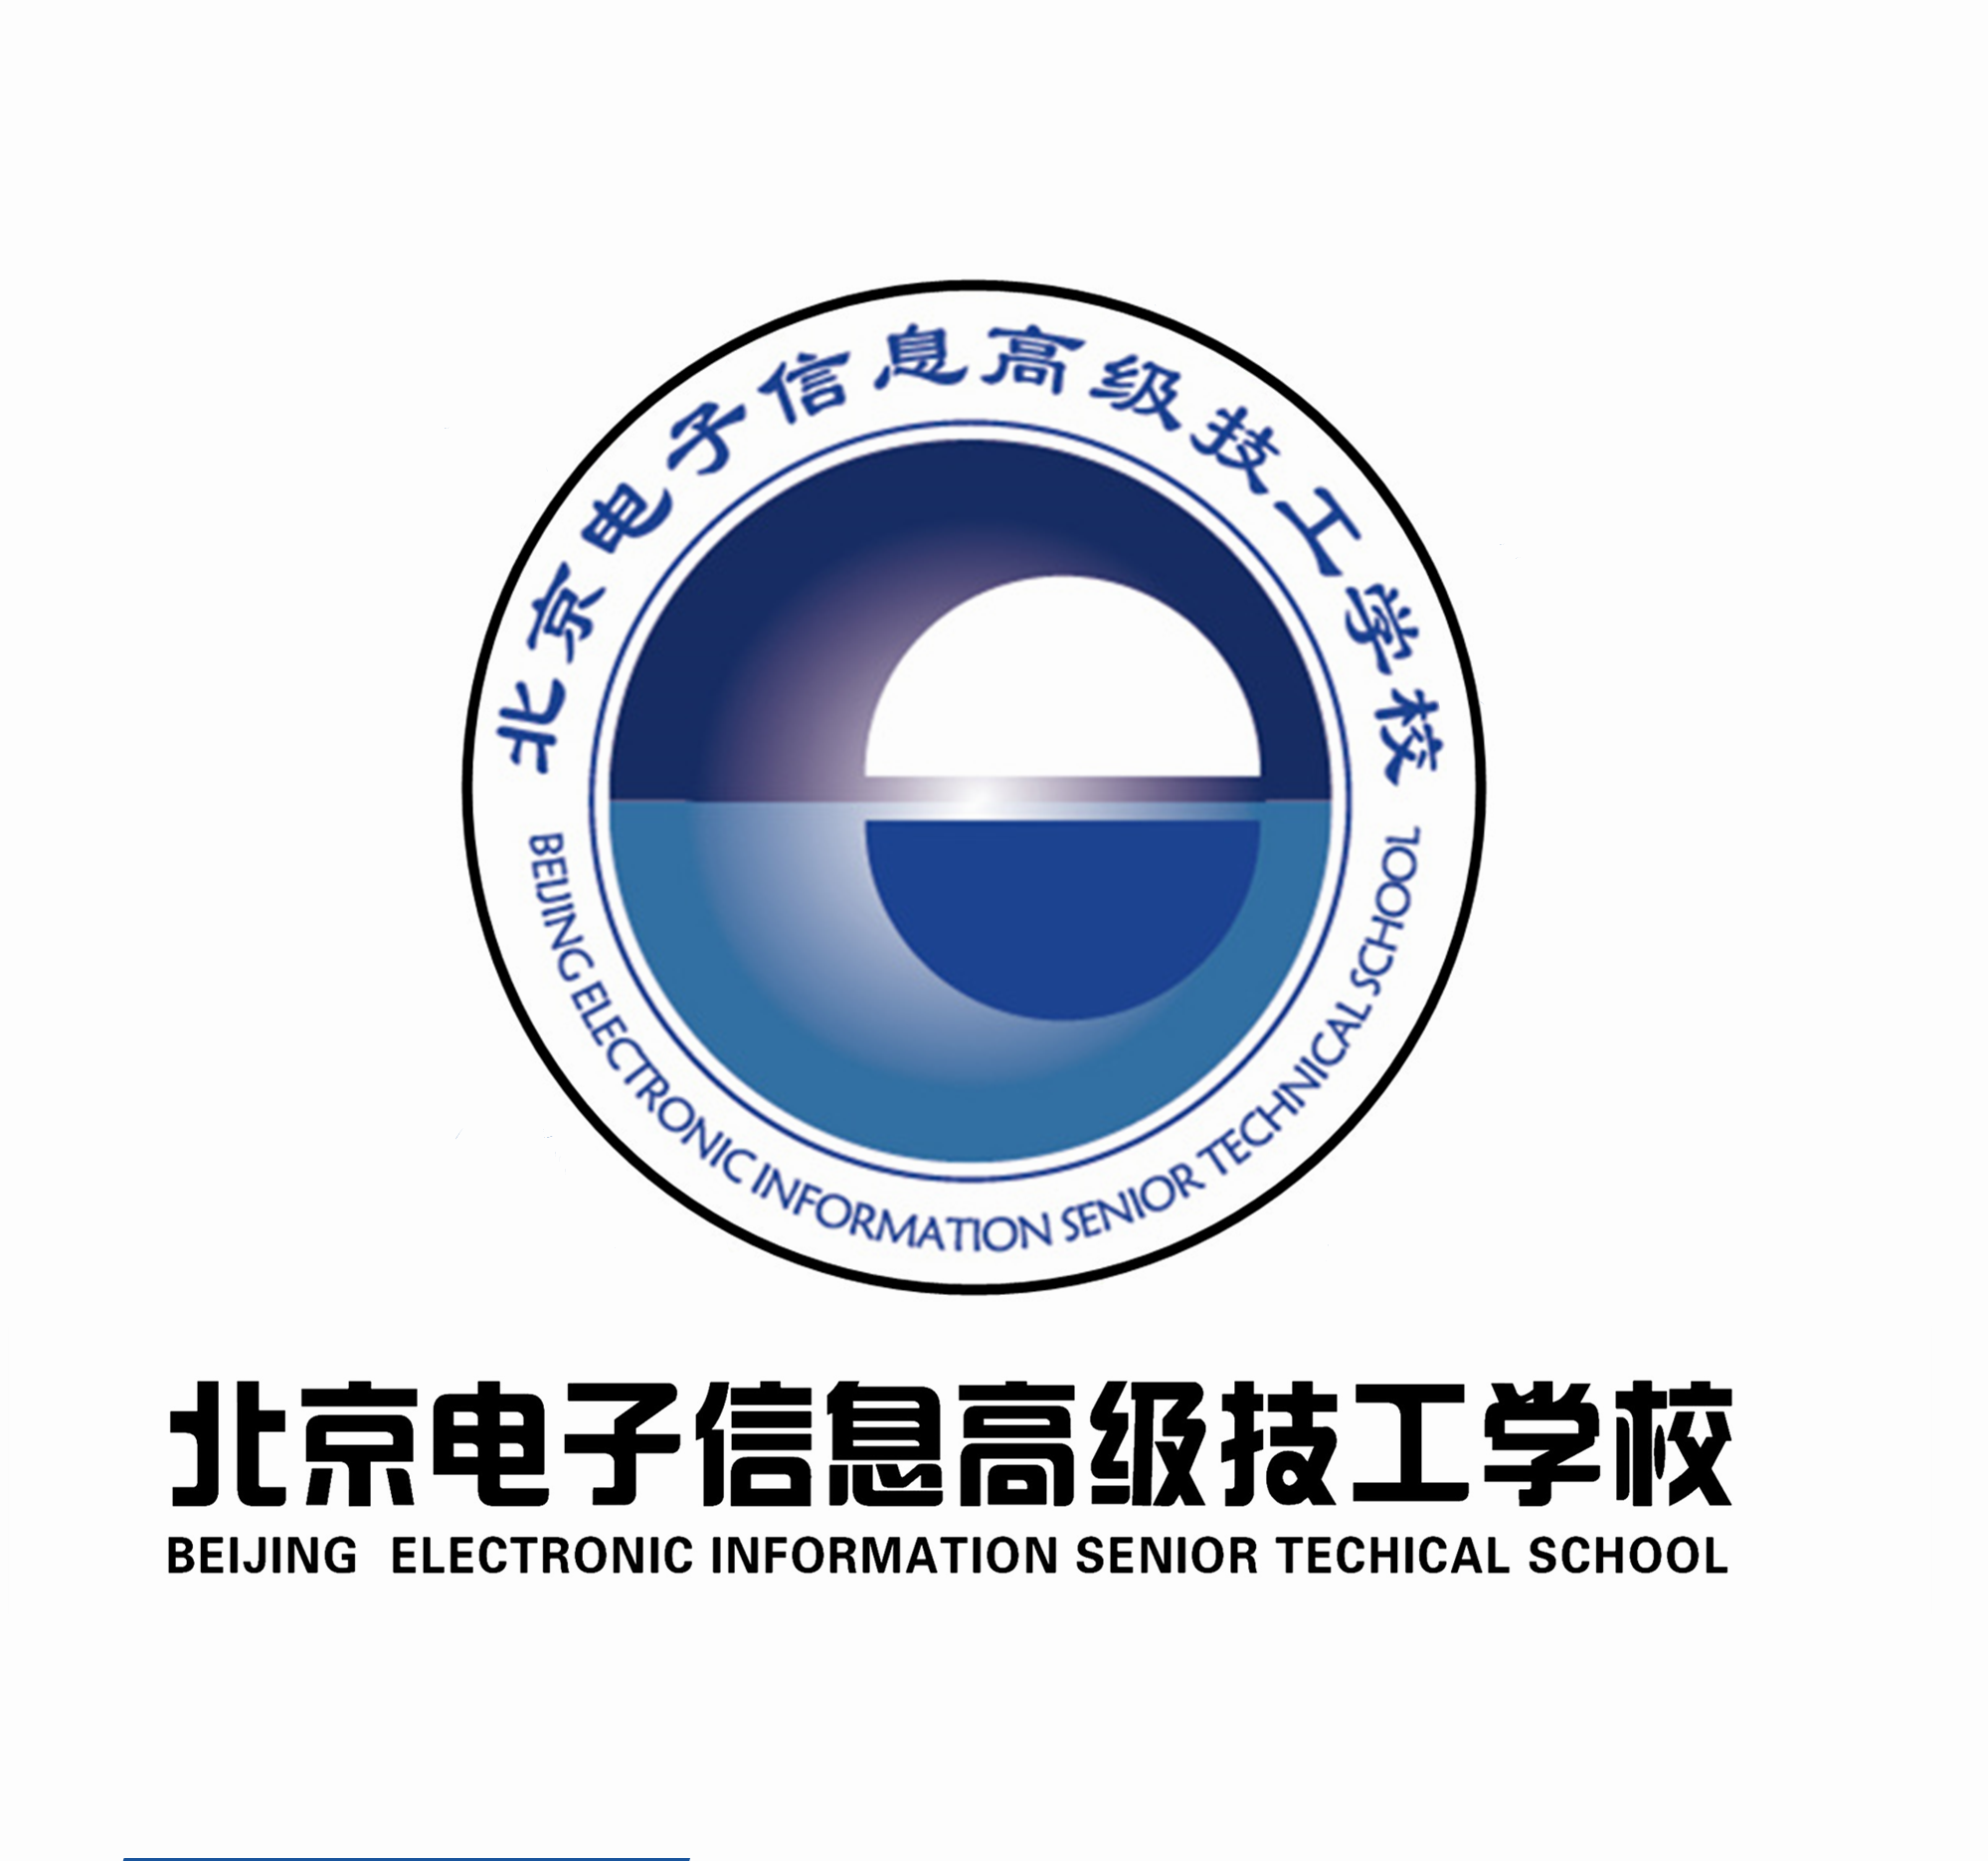 北京電子信息高級技工學校